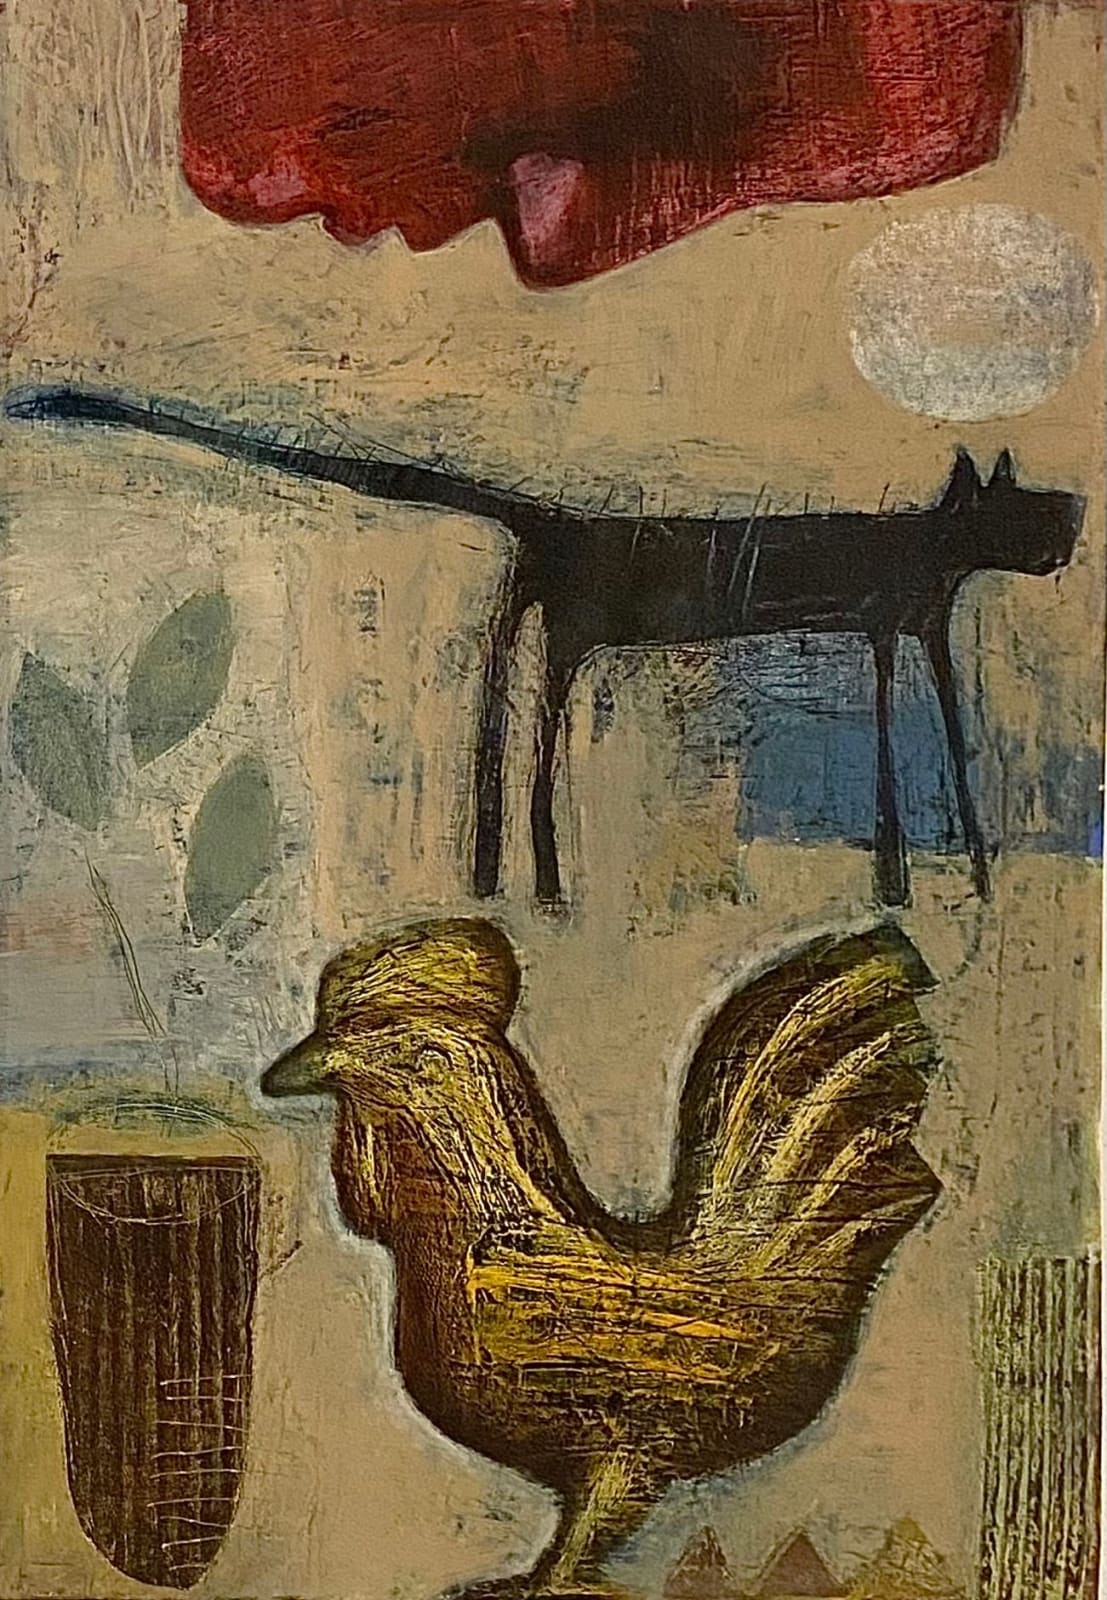 Tom Wood, Red Head, Golden Cockerel, 1989